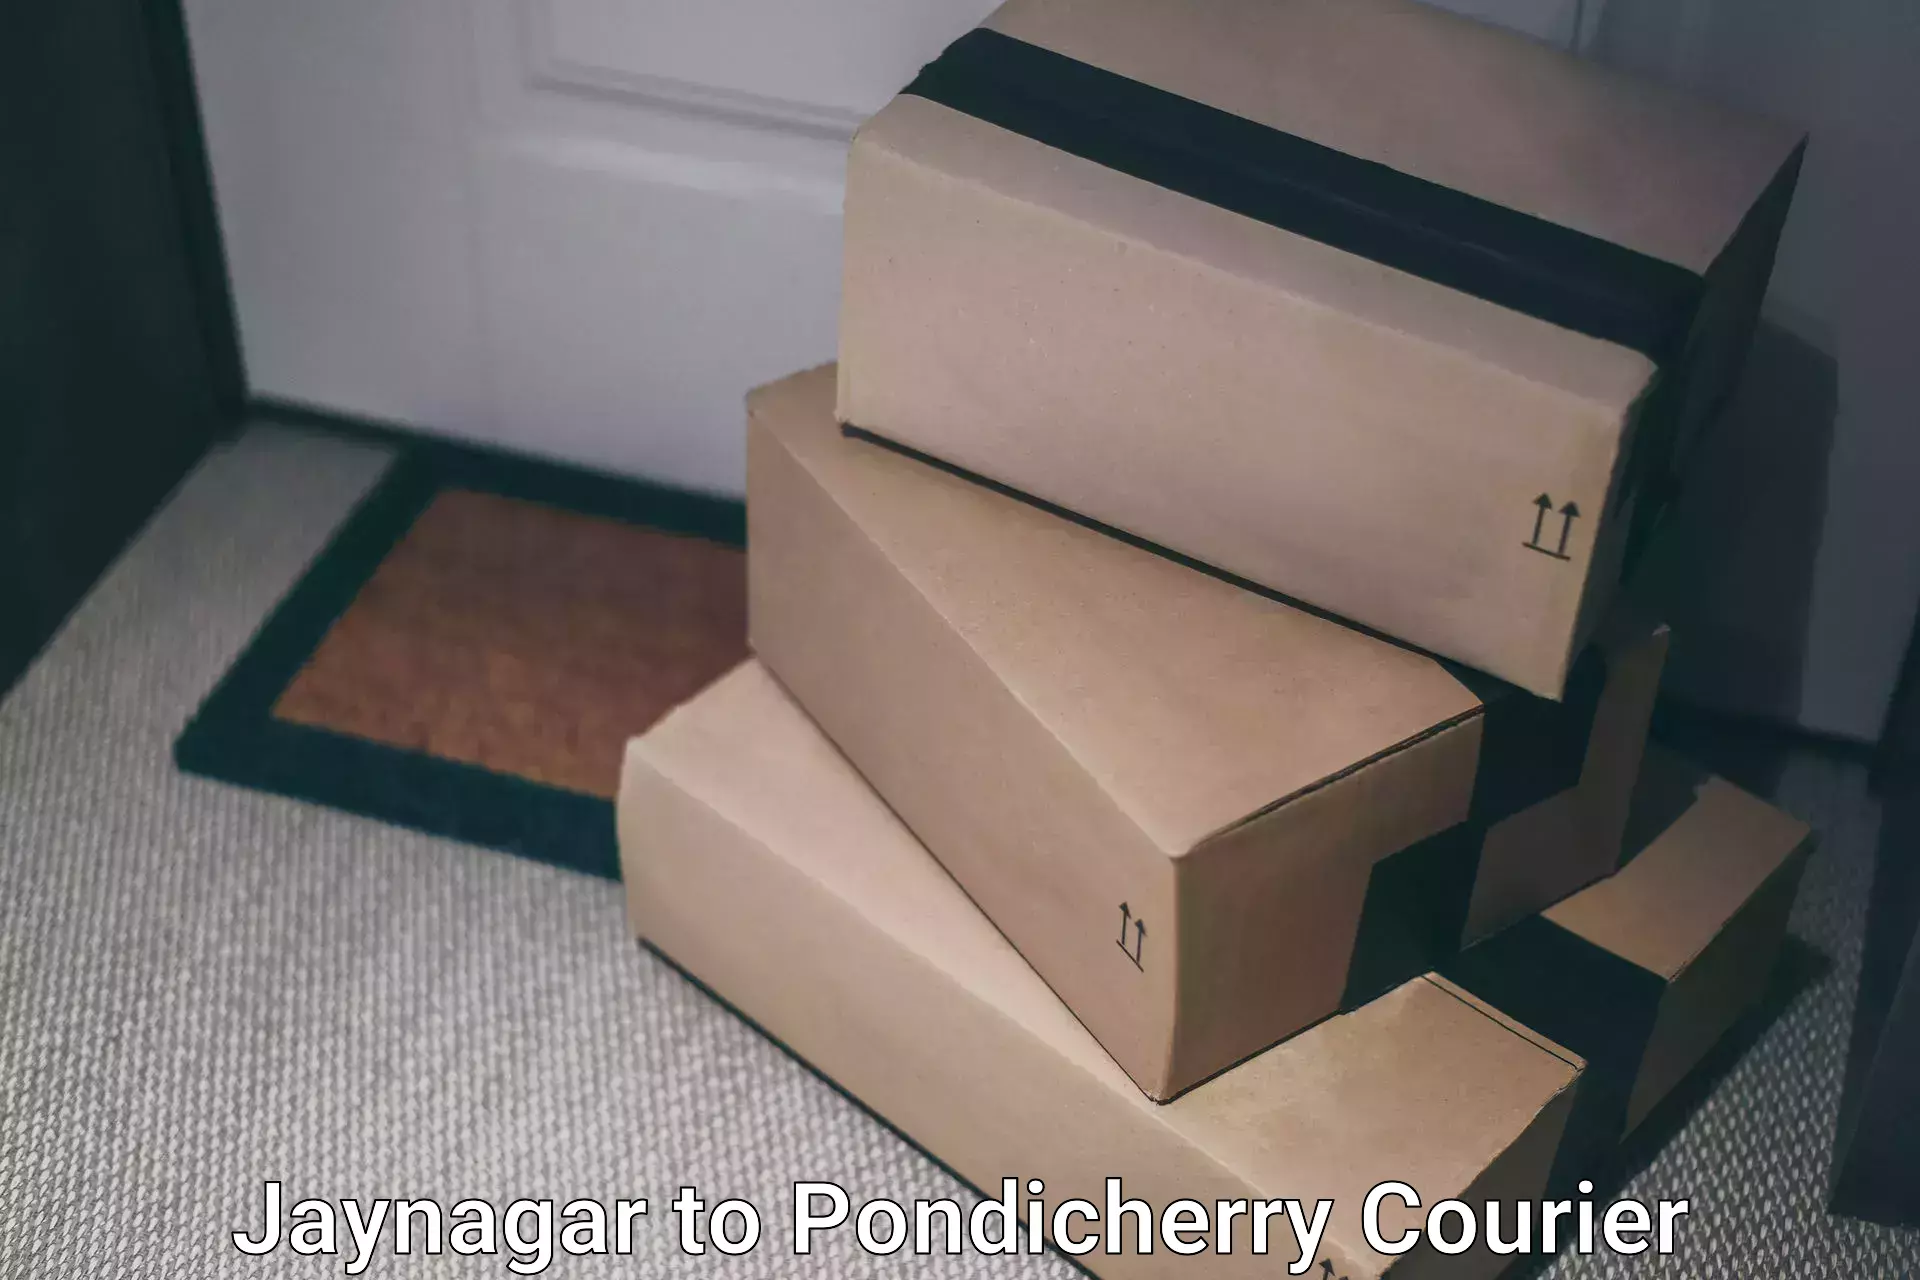 Courier service comparison Jaynagar to Pondicherry